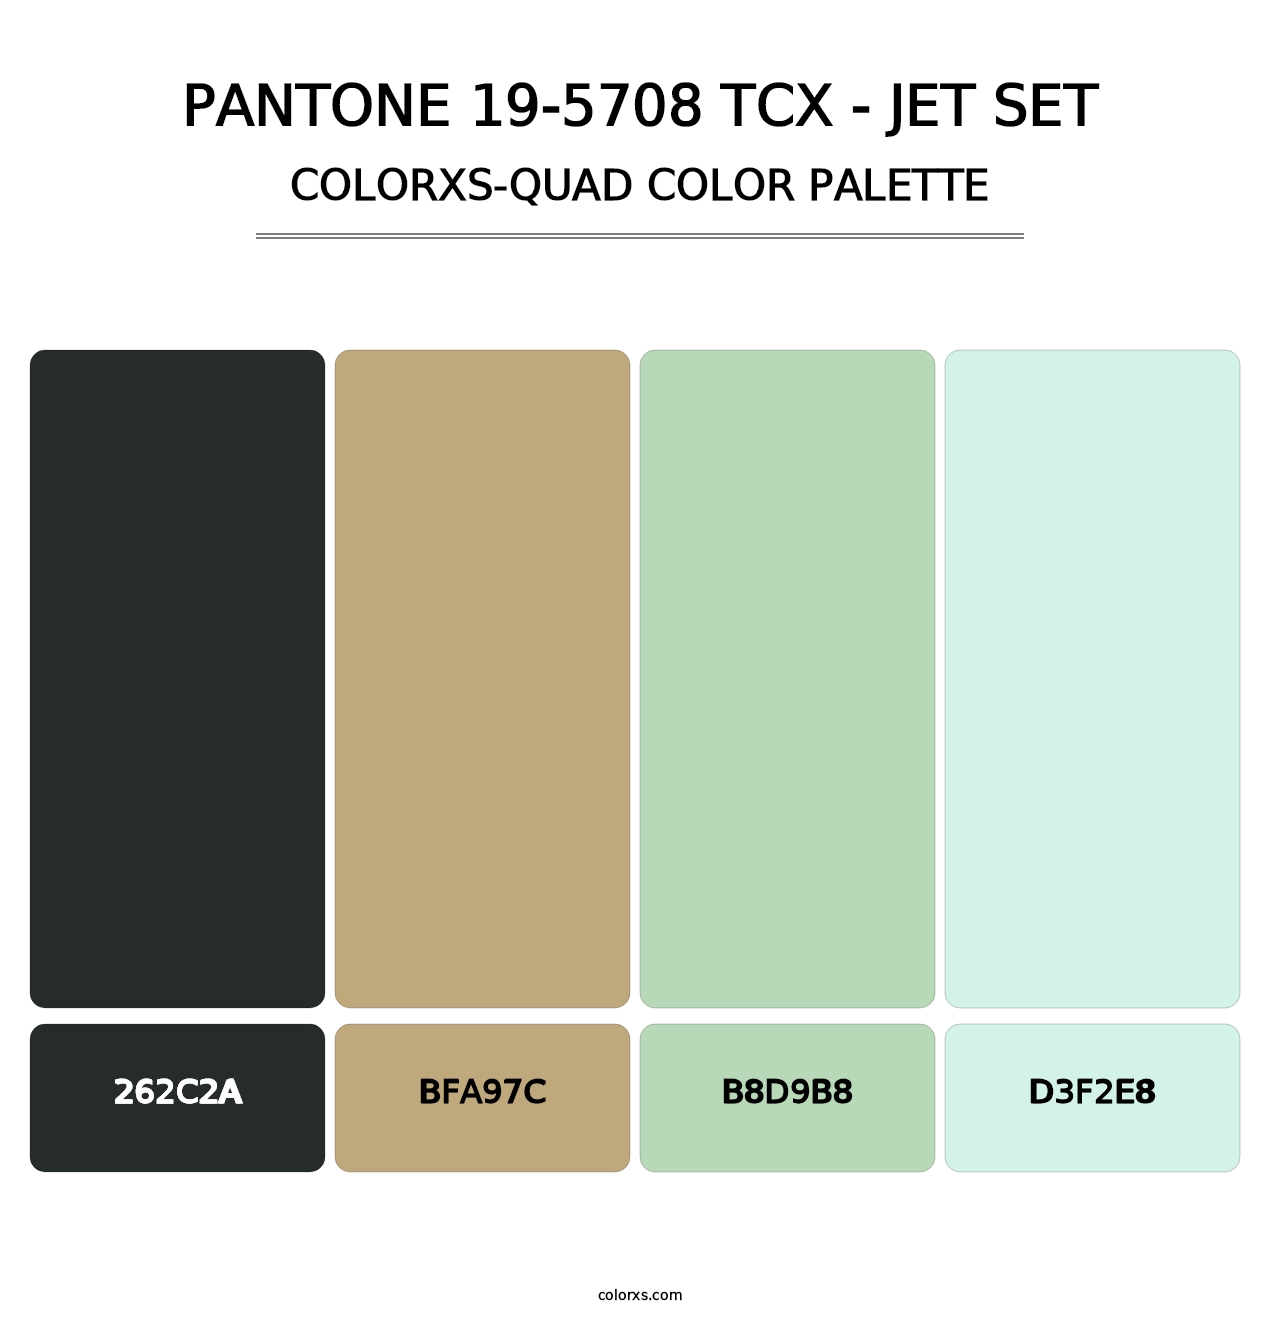 PANTONE 19-5708 TCX - Jet Set - Colorxs Quad Palette